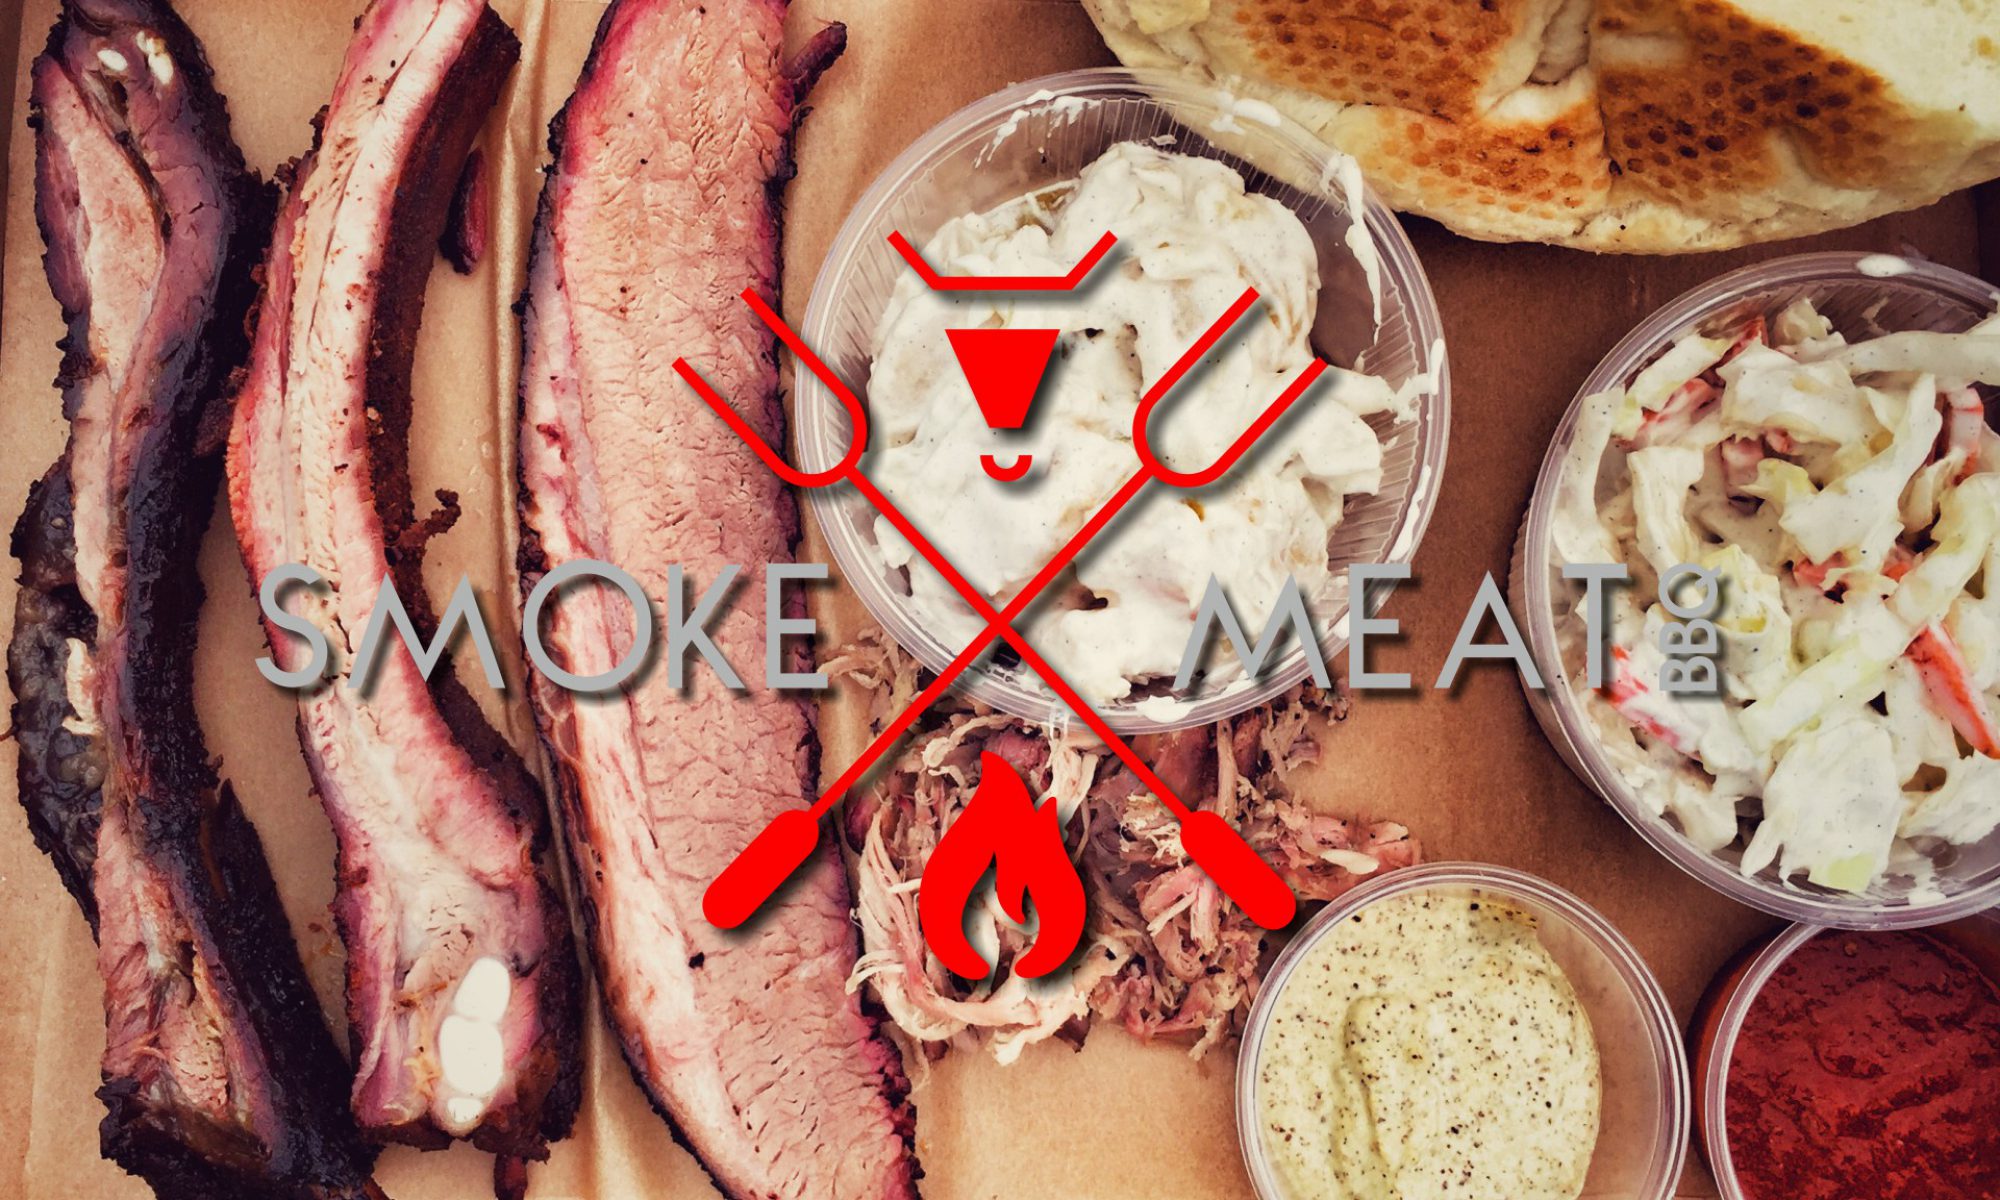 Smoke & Meat BBQ